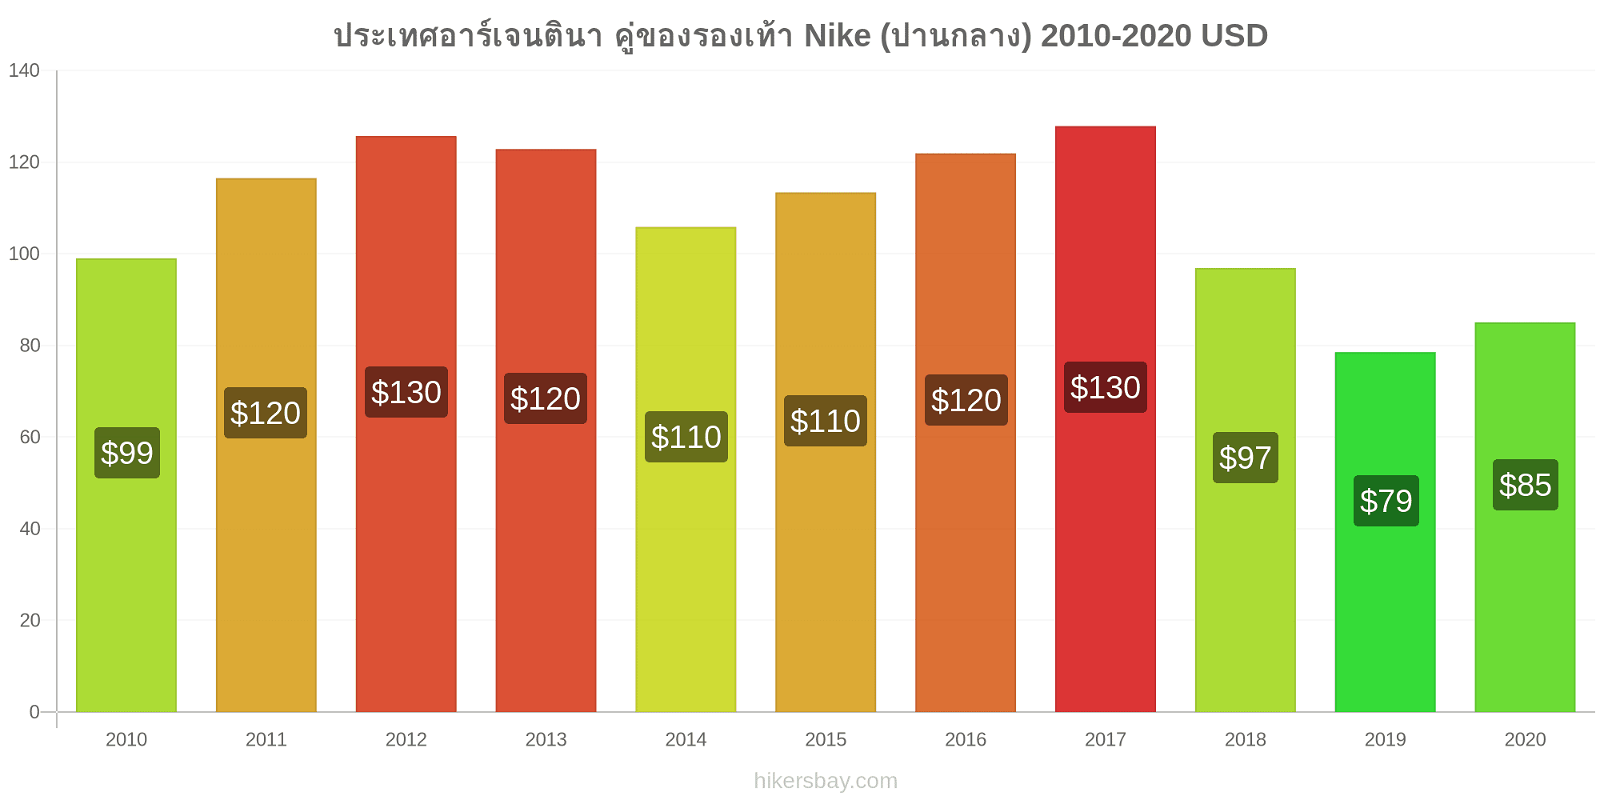 ประเทศอาร์เจนตินา การเปลี่ยนแปลงราคา คู่ของรองเท้า Nike (ปานกลาง) hikersbay.com